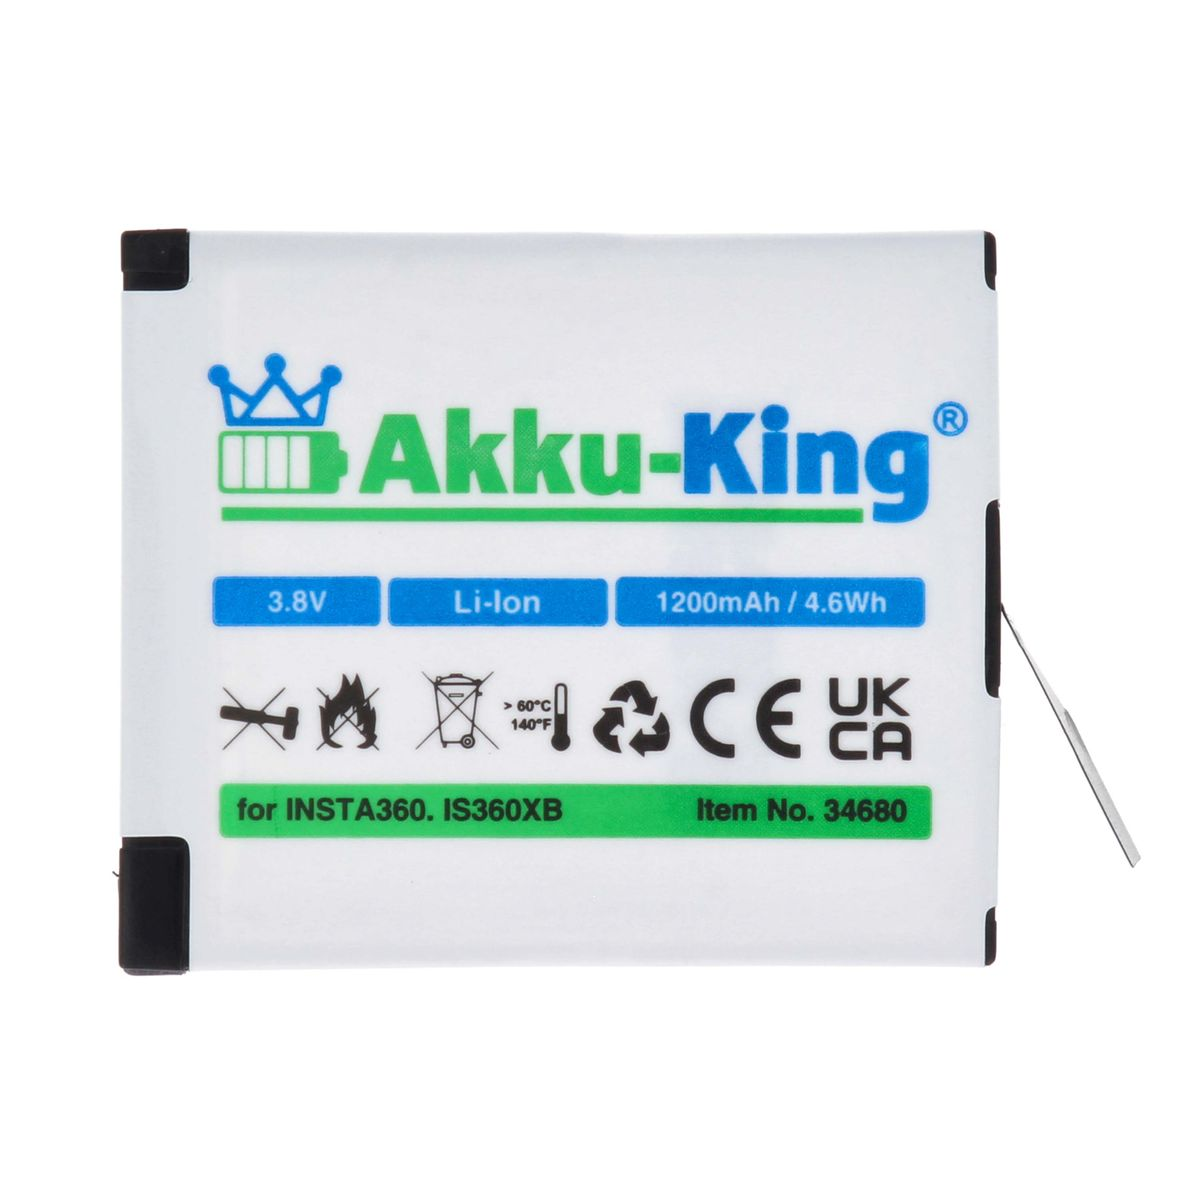 AKKU-KING Volt, mit Akku Insta360 kompatibel IS360XB 3.8 Li-Ion Kamera-Akku, 1200mAh